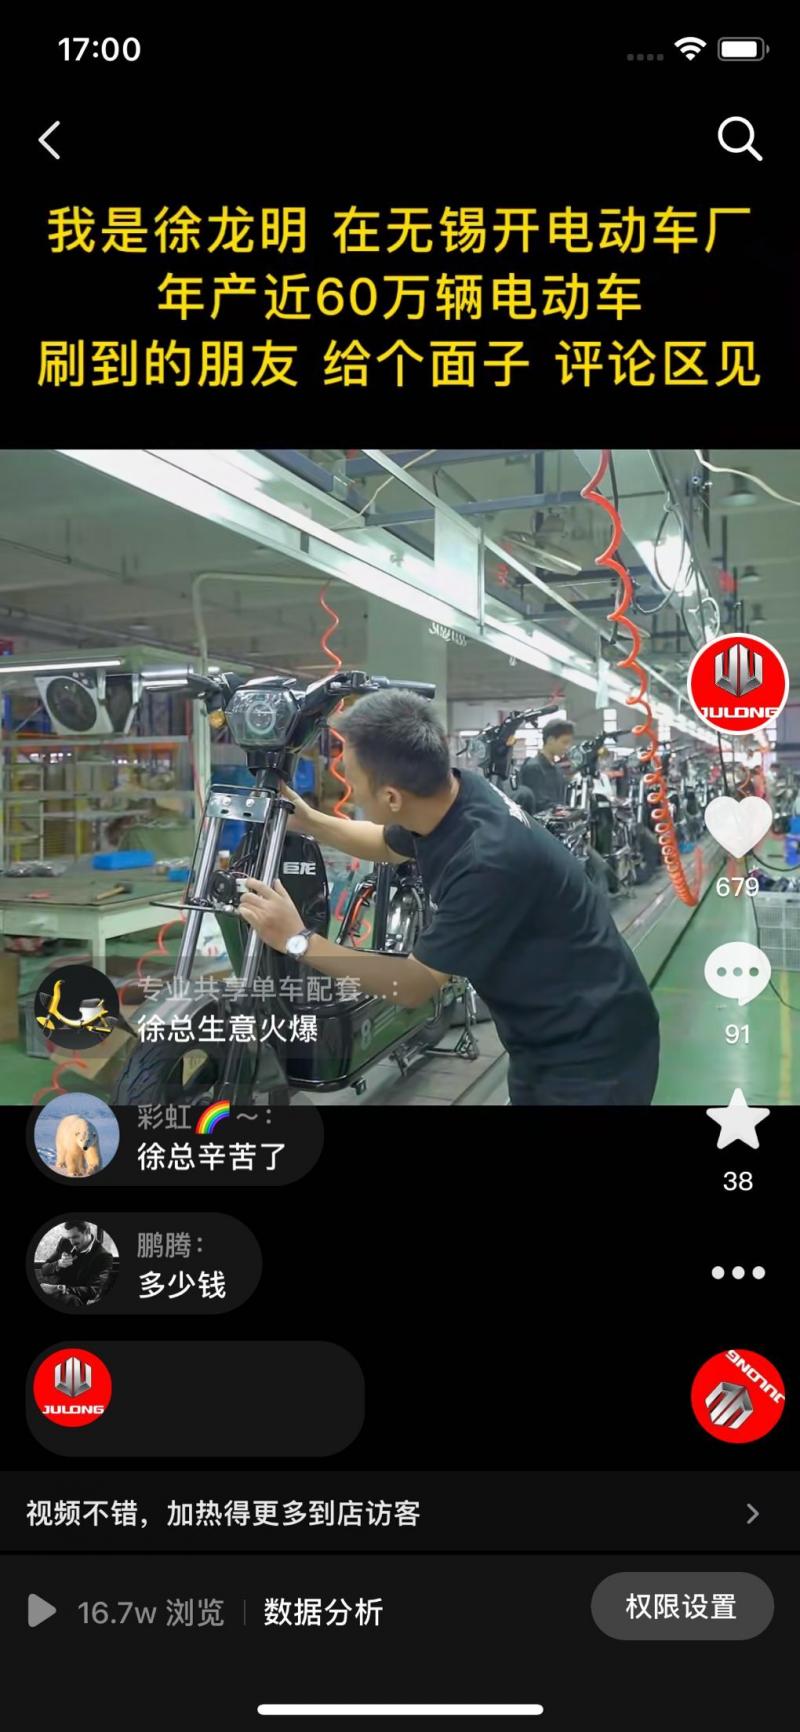 徐氏巨龙(江苏）科技有限公司-抖音短视频爆款案例